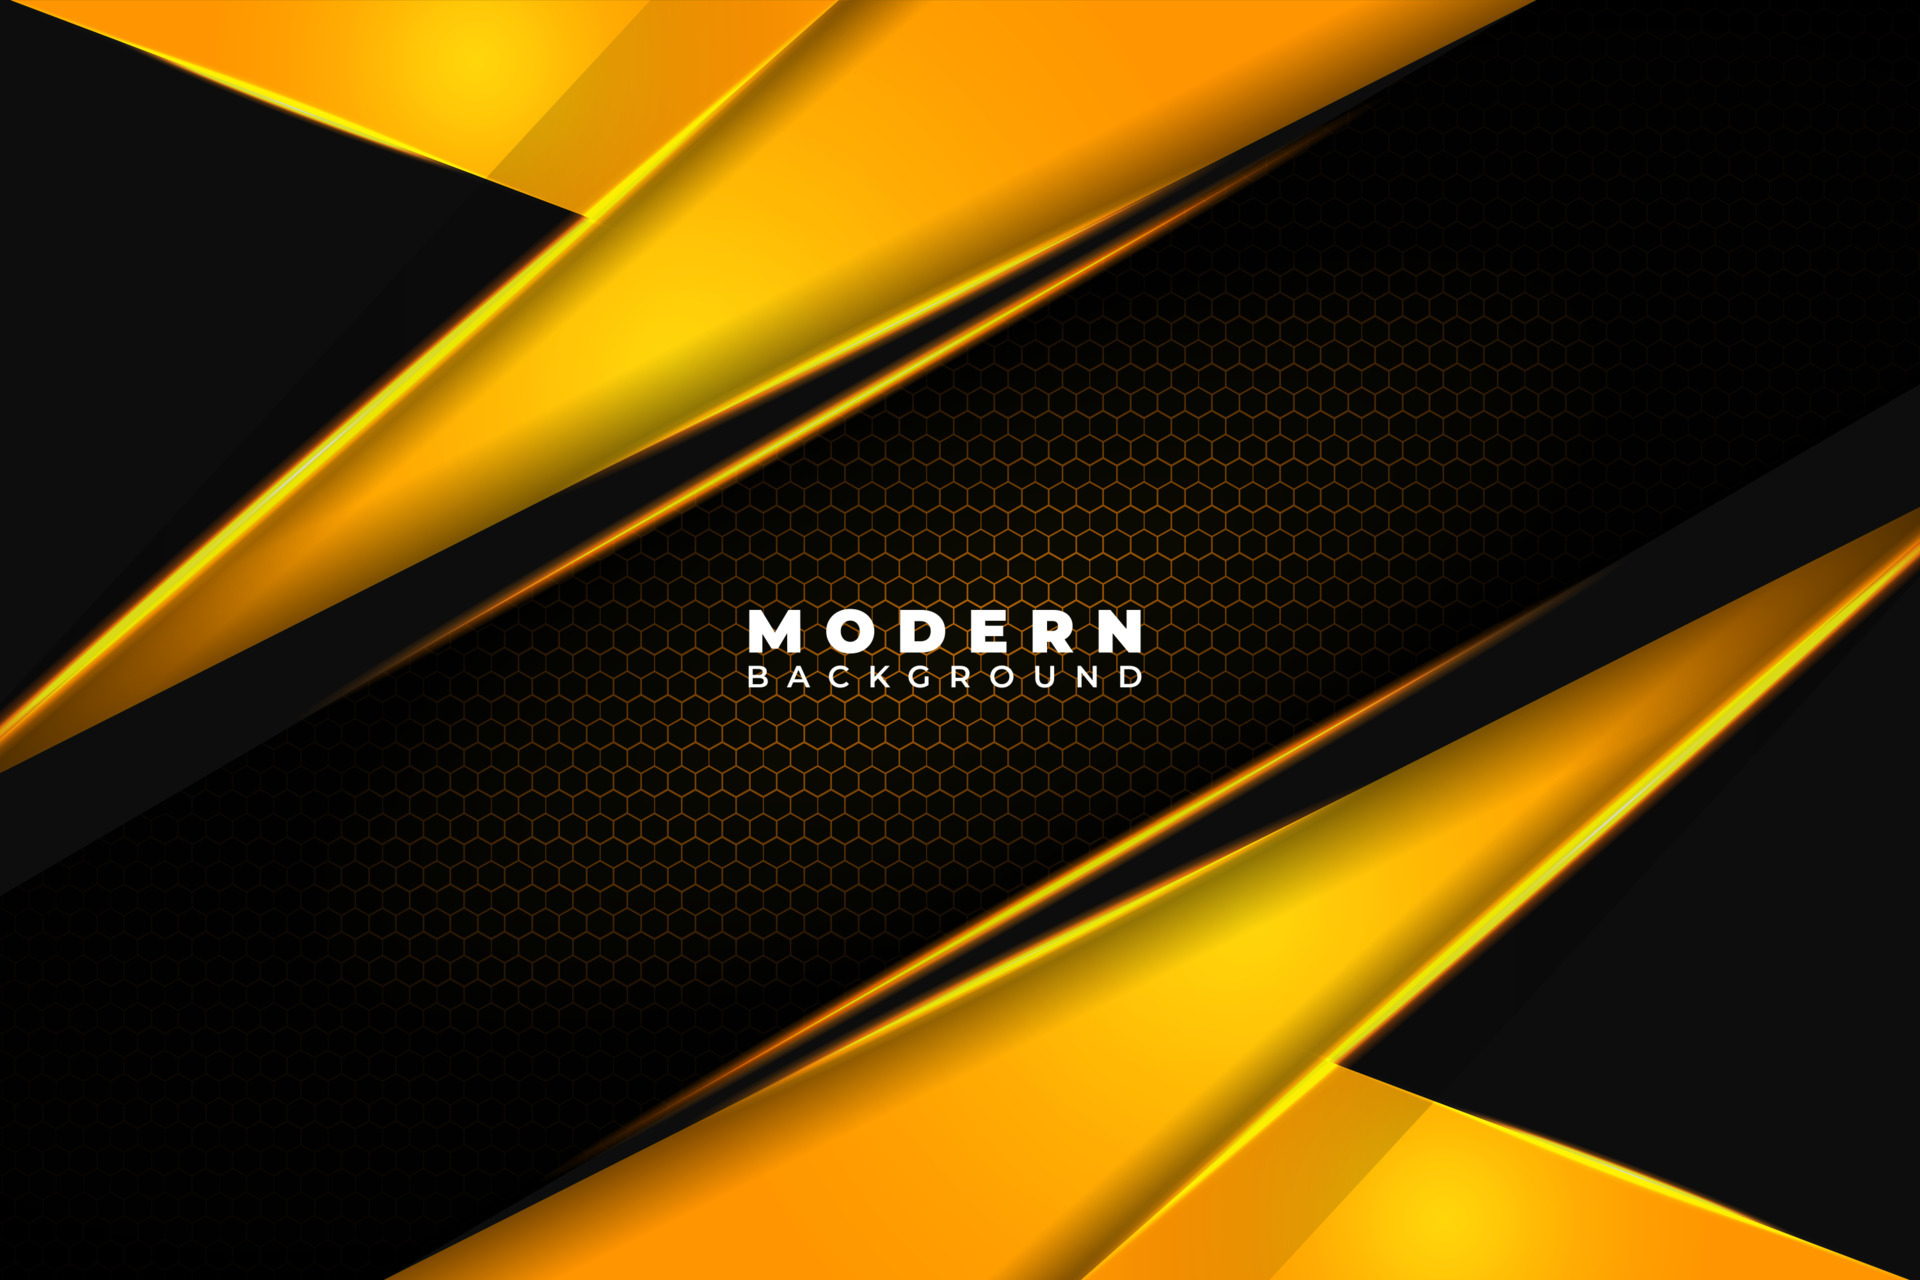 Modern Background: Được thiết kế đặc biệt cho những người yêu phong cách hiện đại và độc đáo. Lớp nền hình chữ nhật của chúng tôi mang đến sự tươi mới và sức sống cho từng tác phẩm. Hãy trải nghiệm một thế giới đầy màu sắc và phong cách.